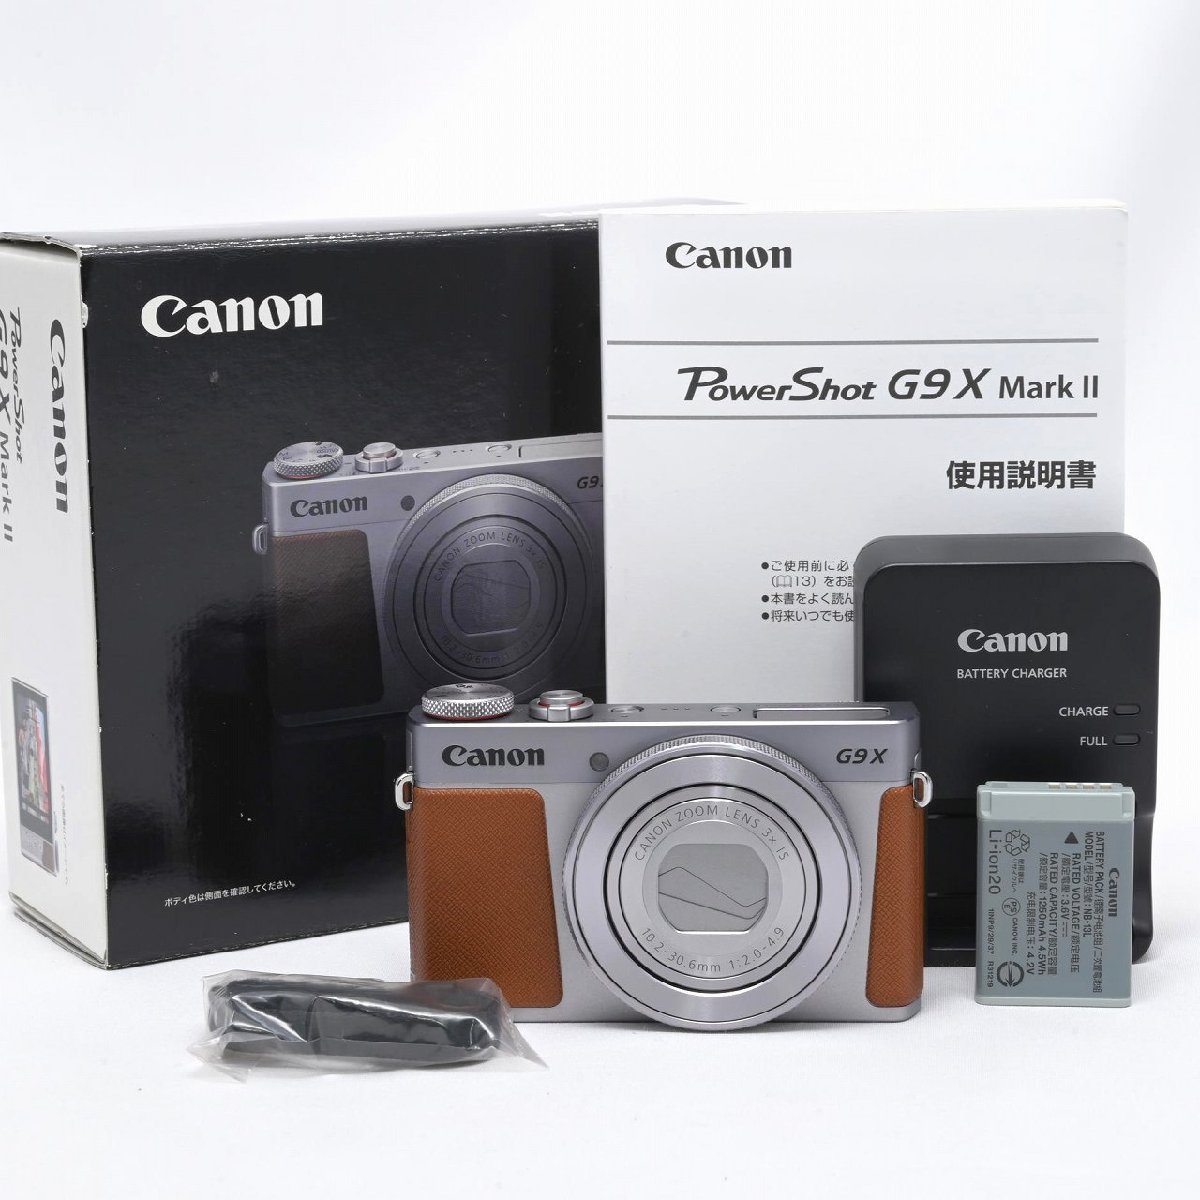 日本代理店正規品 Canon PowerShot G9X Mark II シルバー 通販